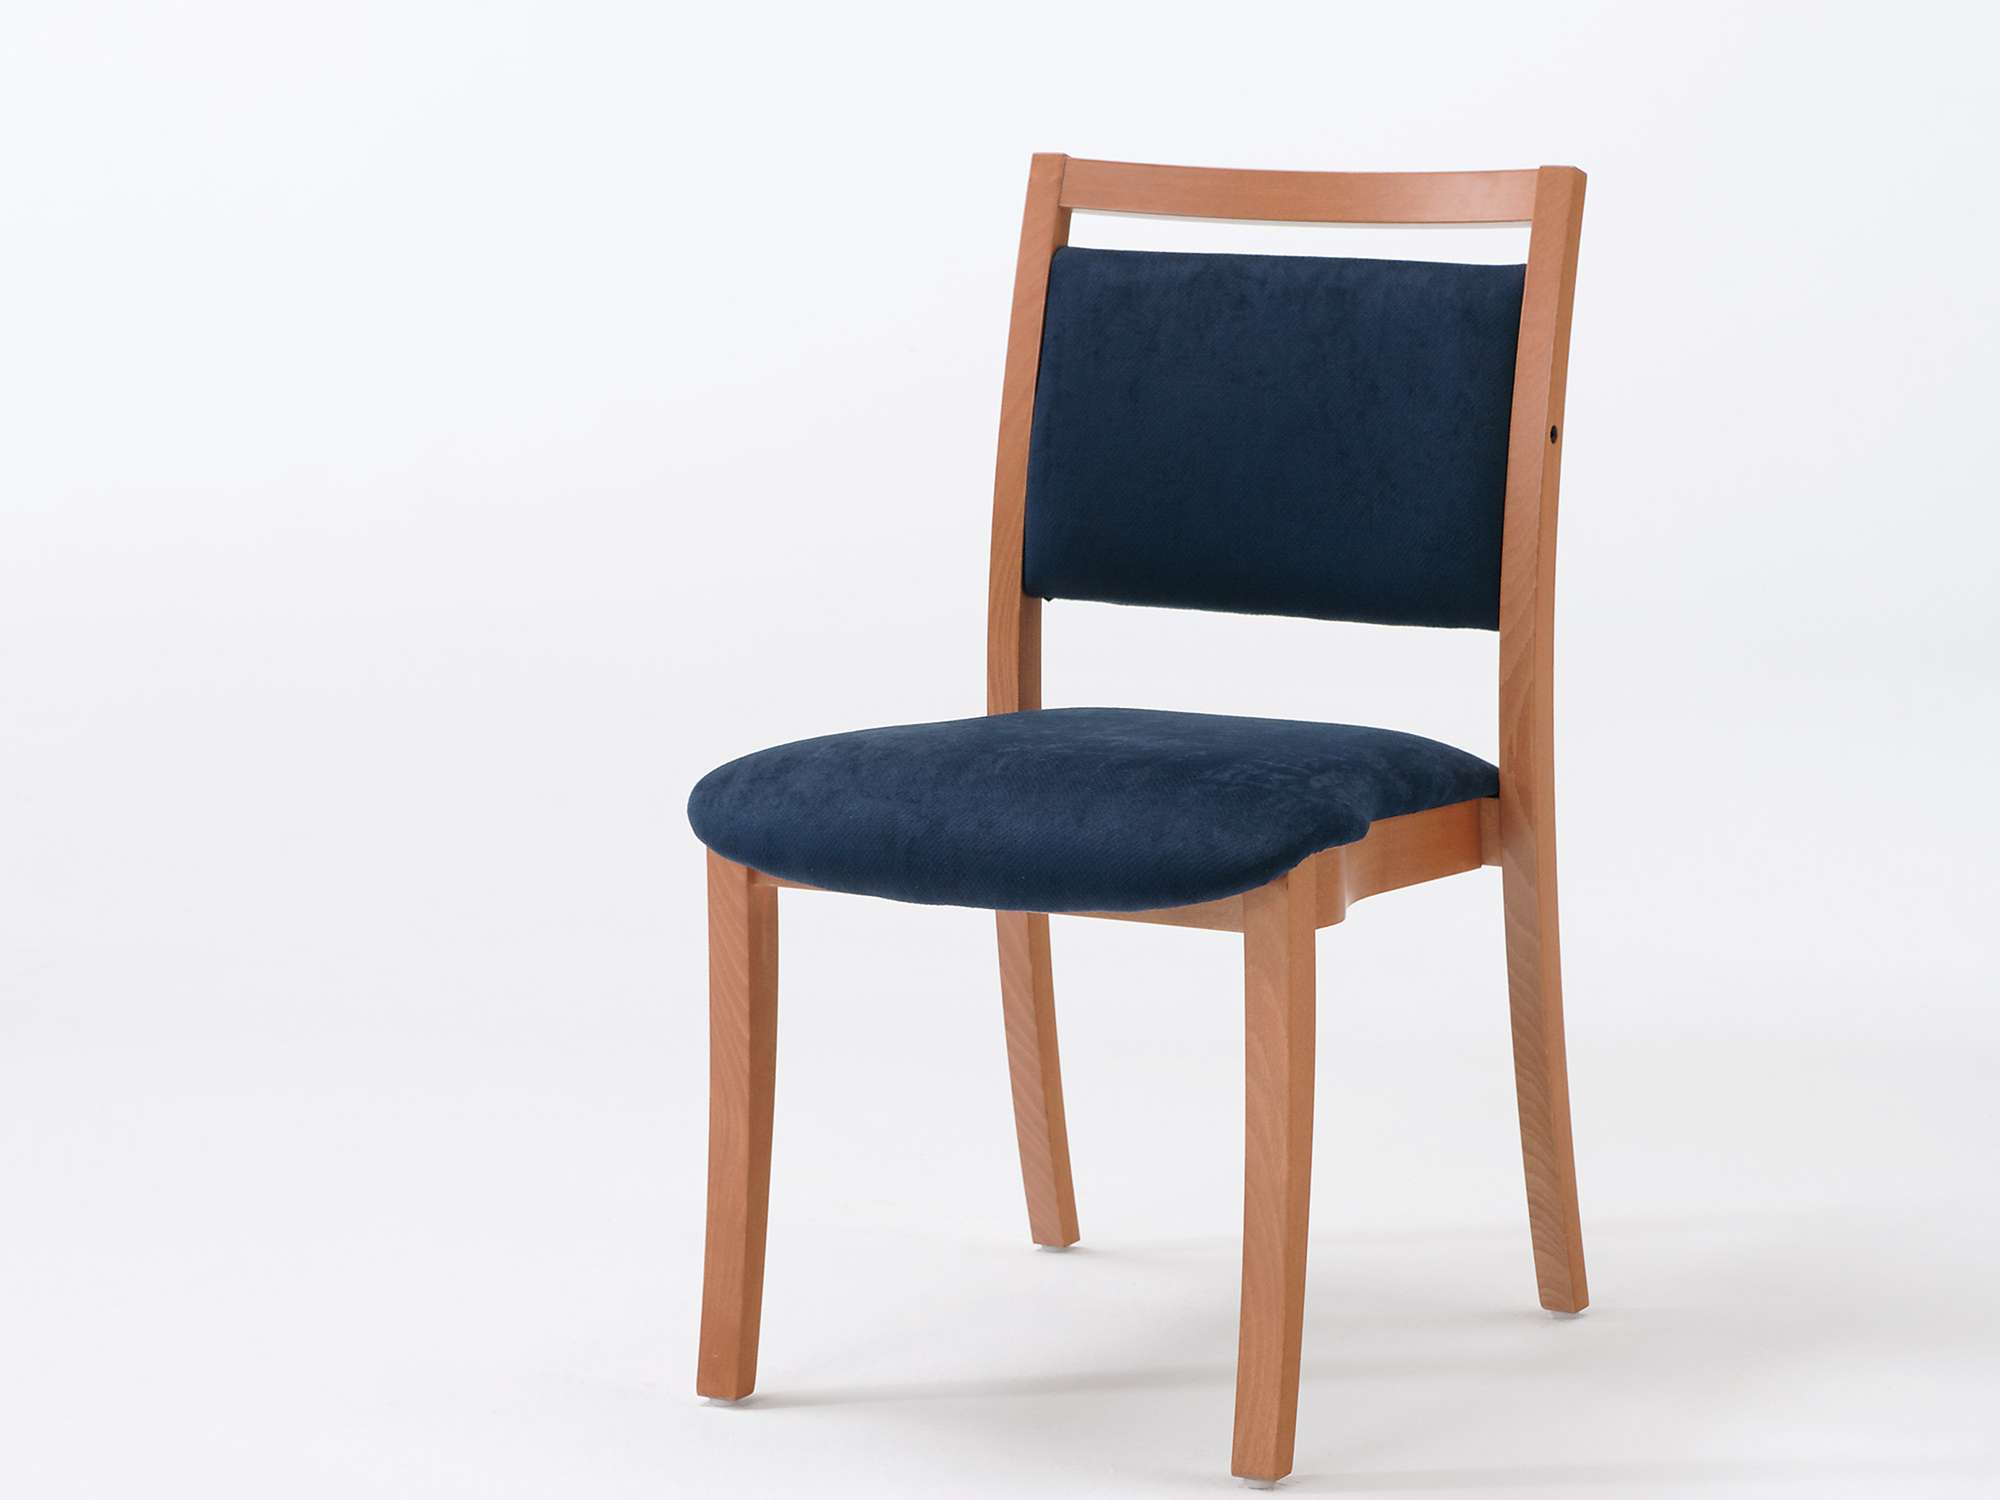 Modèle Sedego version chaise empilable avec main courante